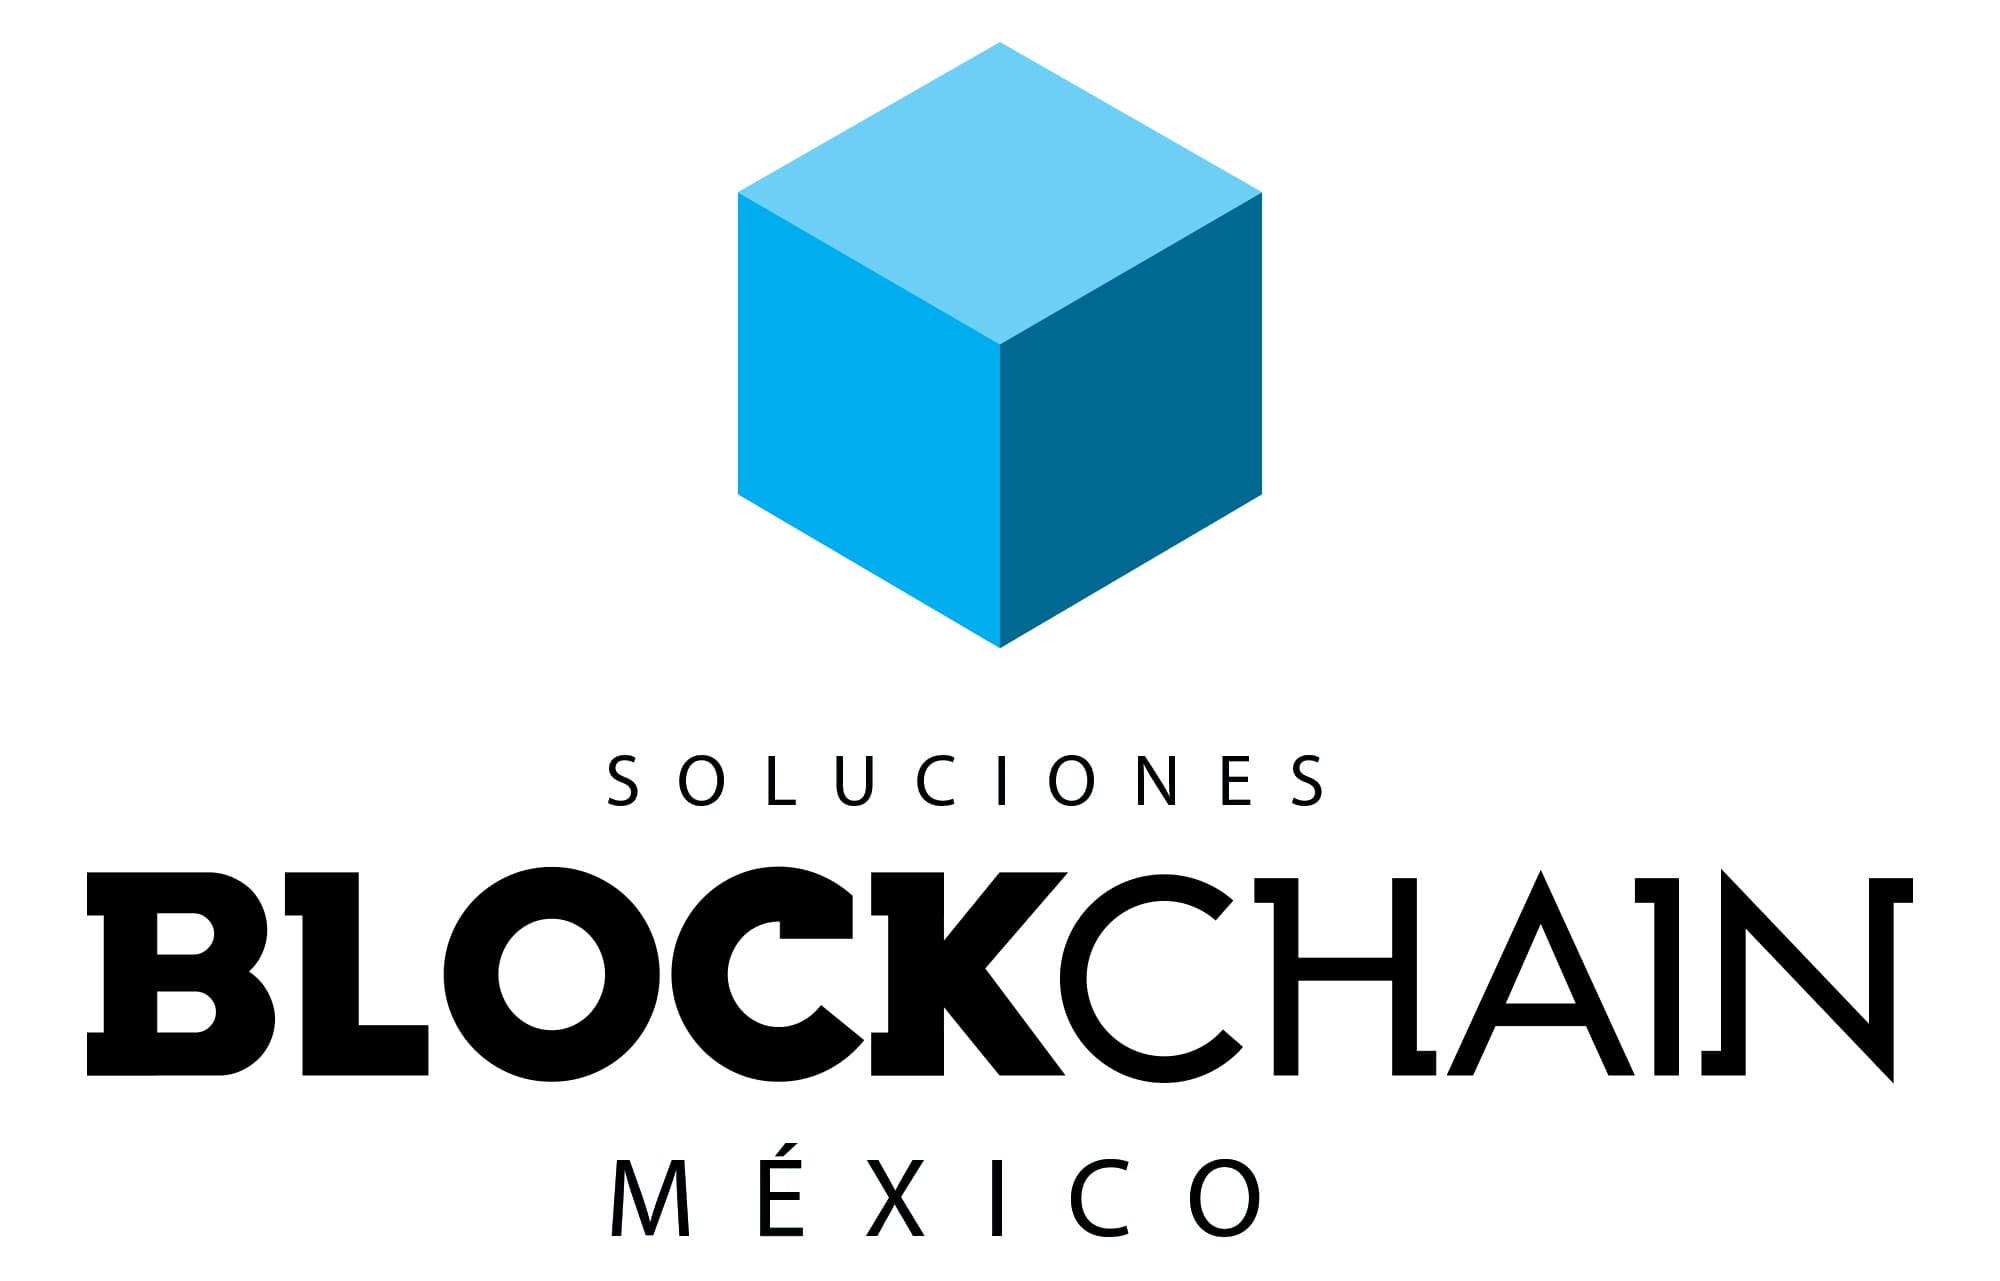 Soluciones Blockchain Mexico